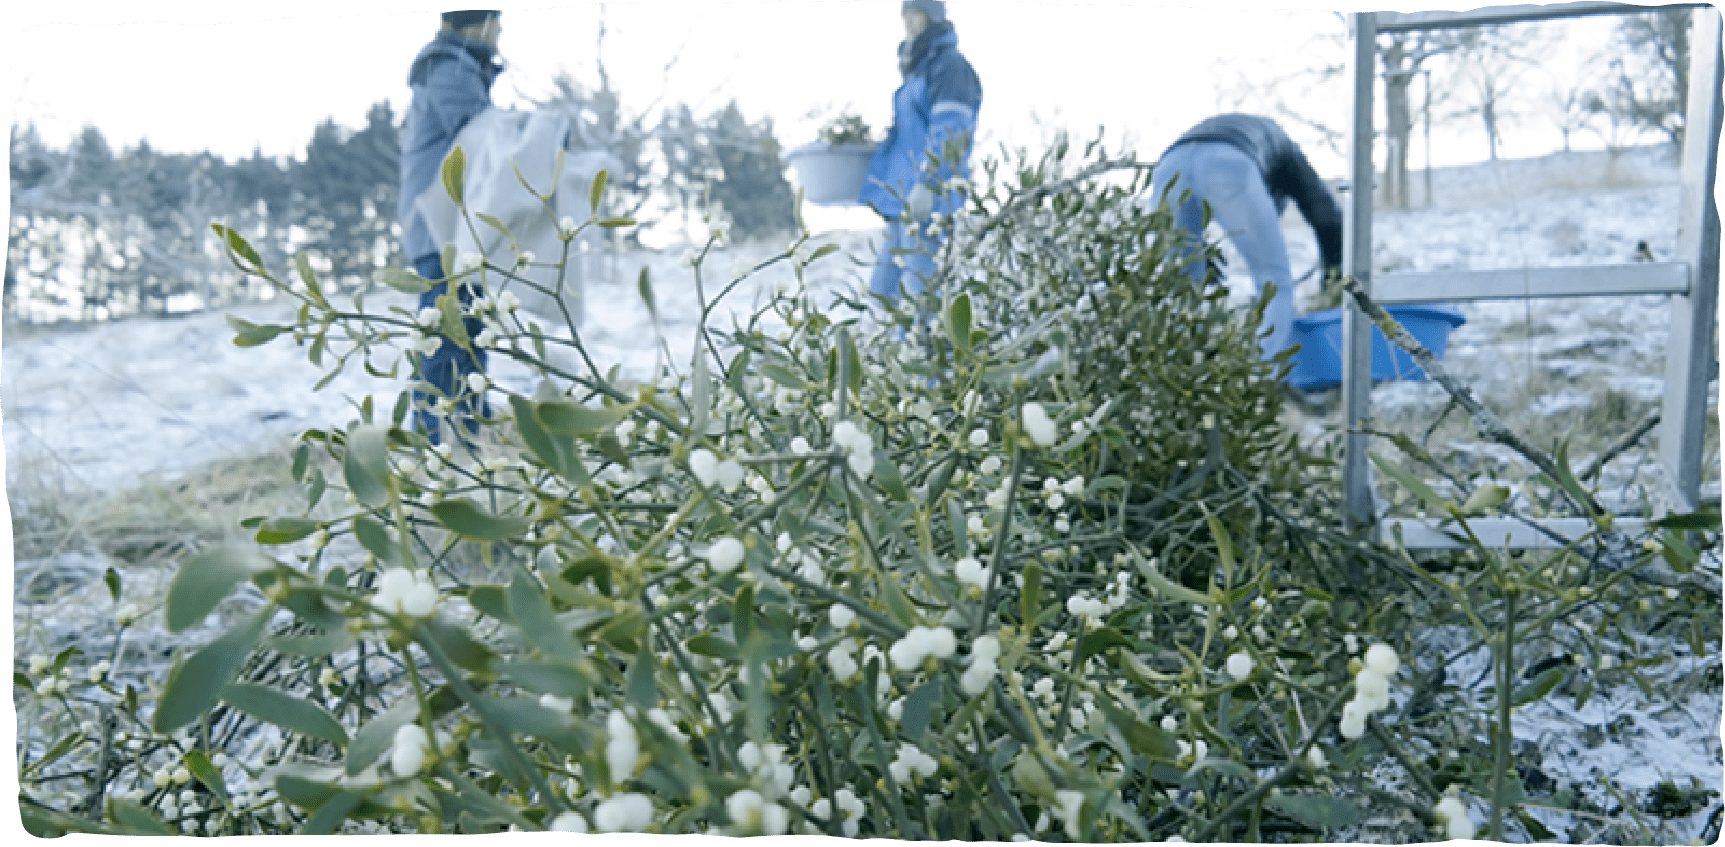 Ein großer Haufen Mistelzweige, die von 3 Erntemitarbeitern im Winter gesammelt wurden